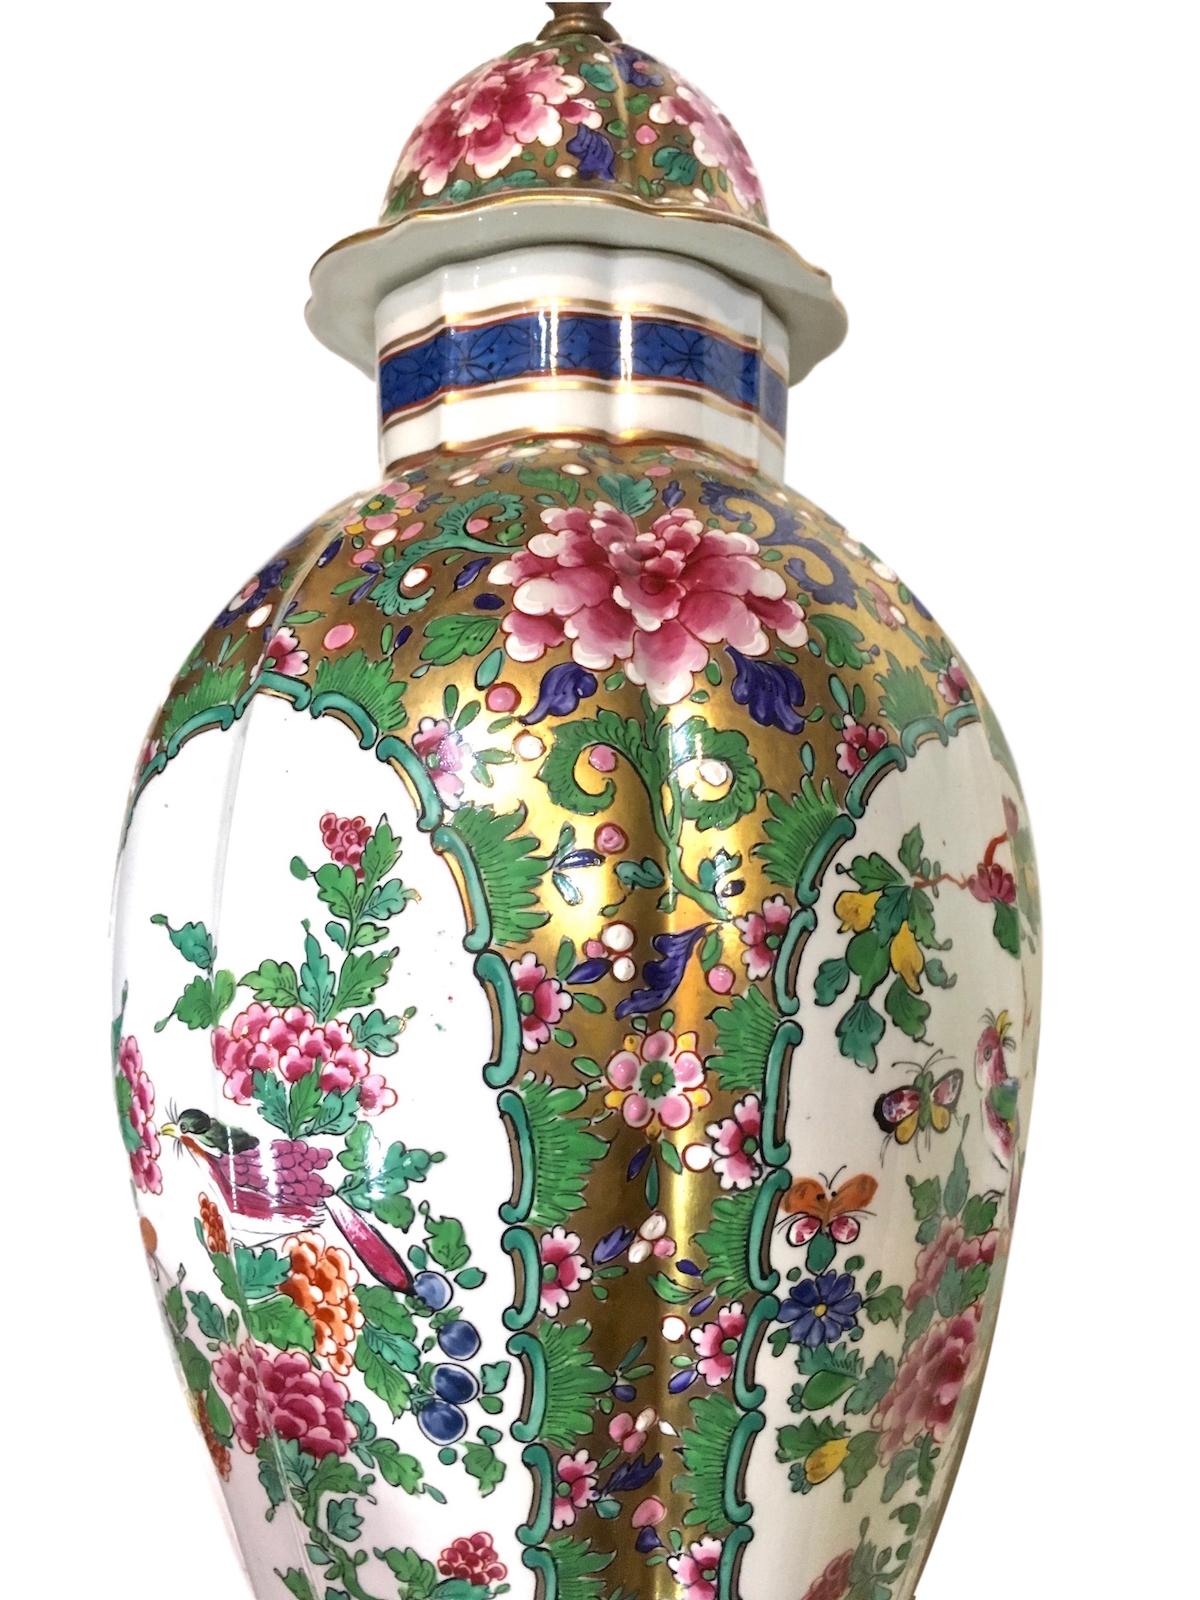 Eine einzelne chinesische Porzellan-Tischlampe aus den 1940er Jahren mit vergoldetem und floralem Dekor.

Abmessungen:
Höhe des Körpers: 22